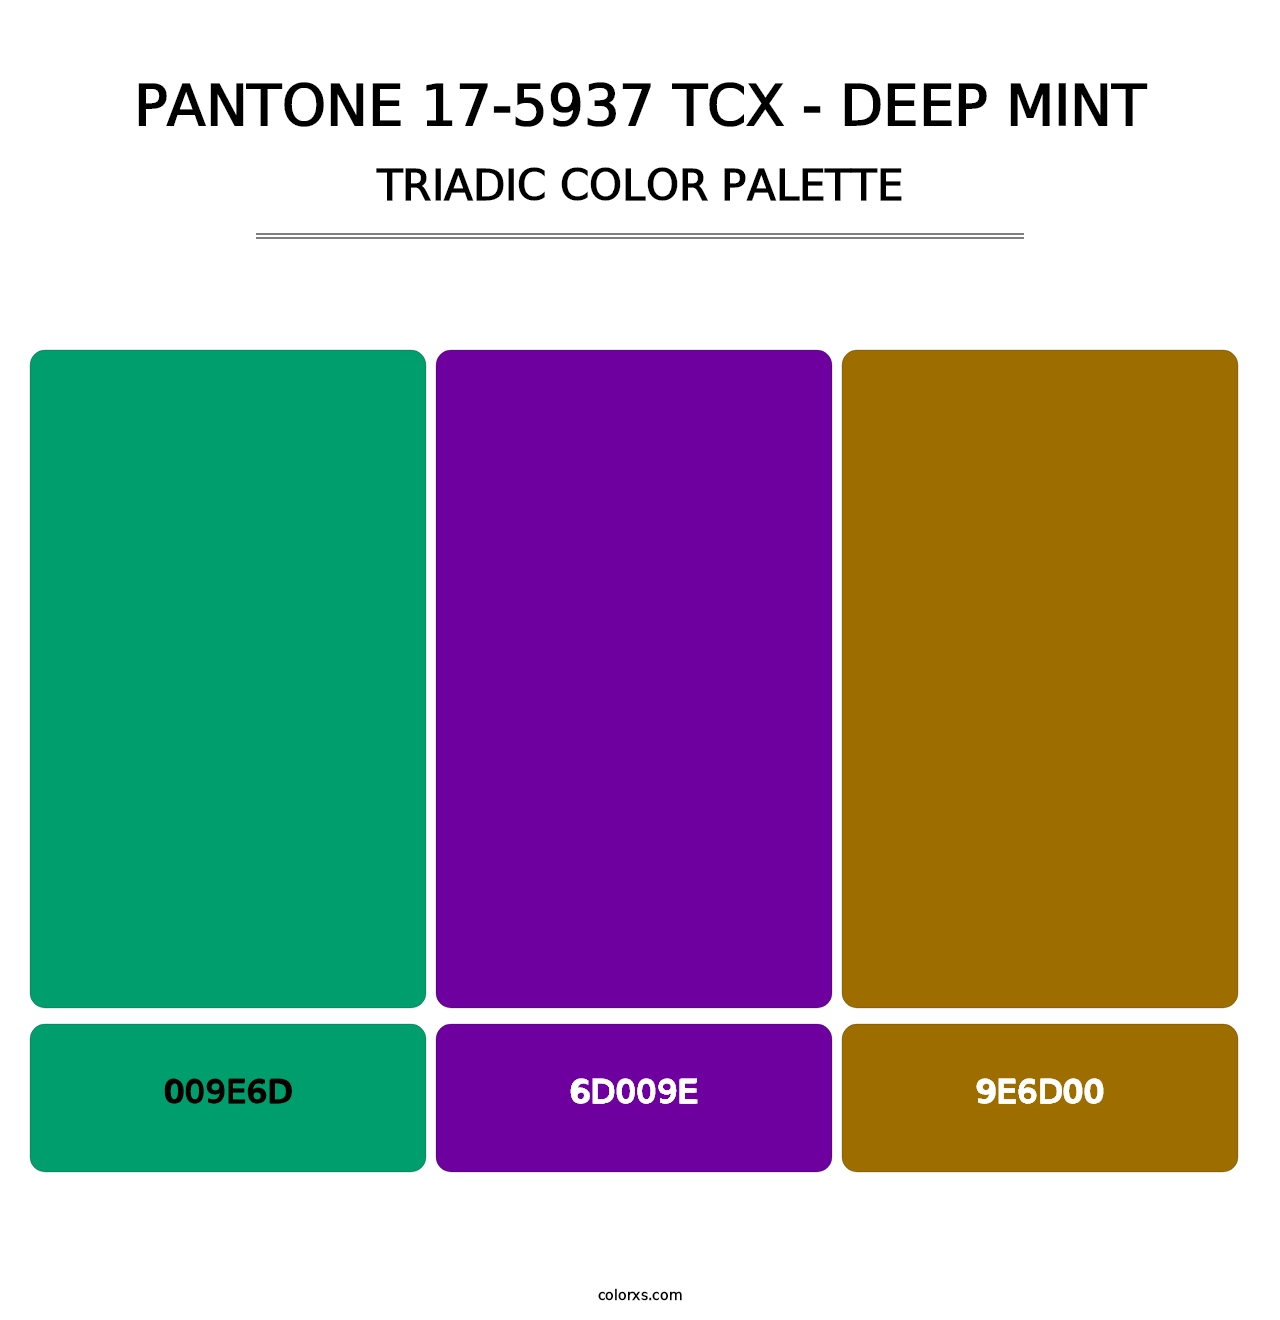 PANTONE 17-5937 TCX - Deep Mint - Triadic Color Palette